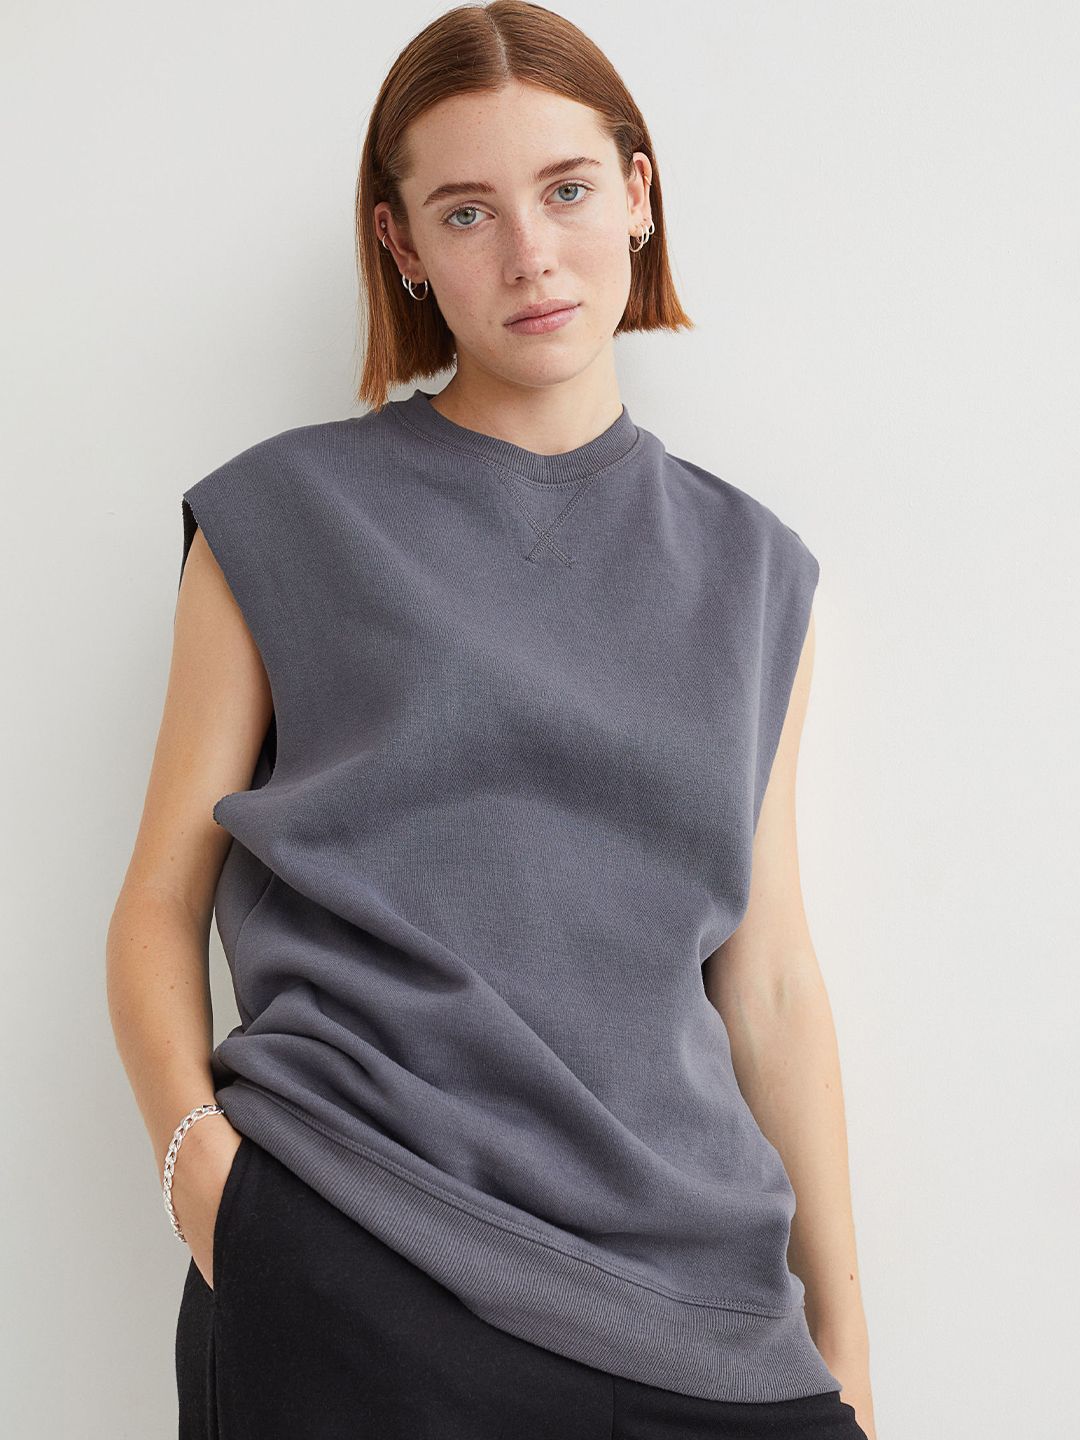 H&M Women Grey Sleeveless sweatshirt Price in India